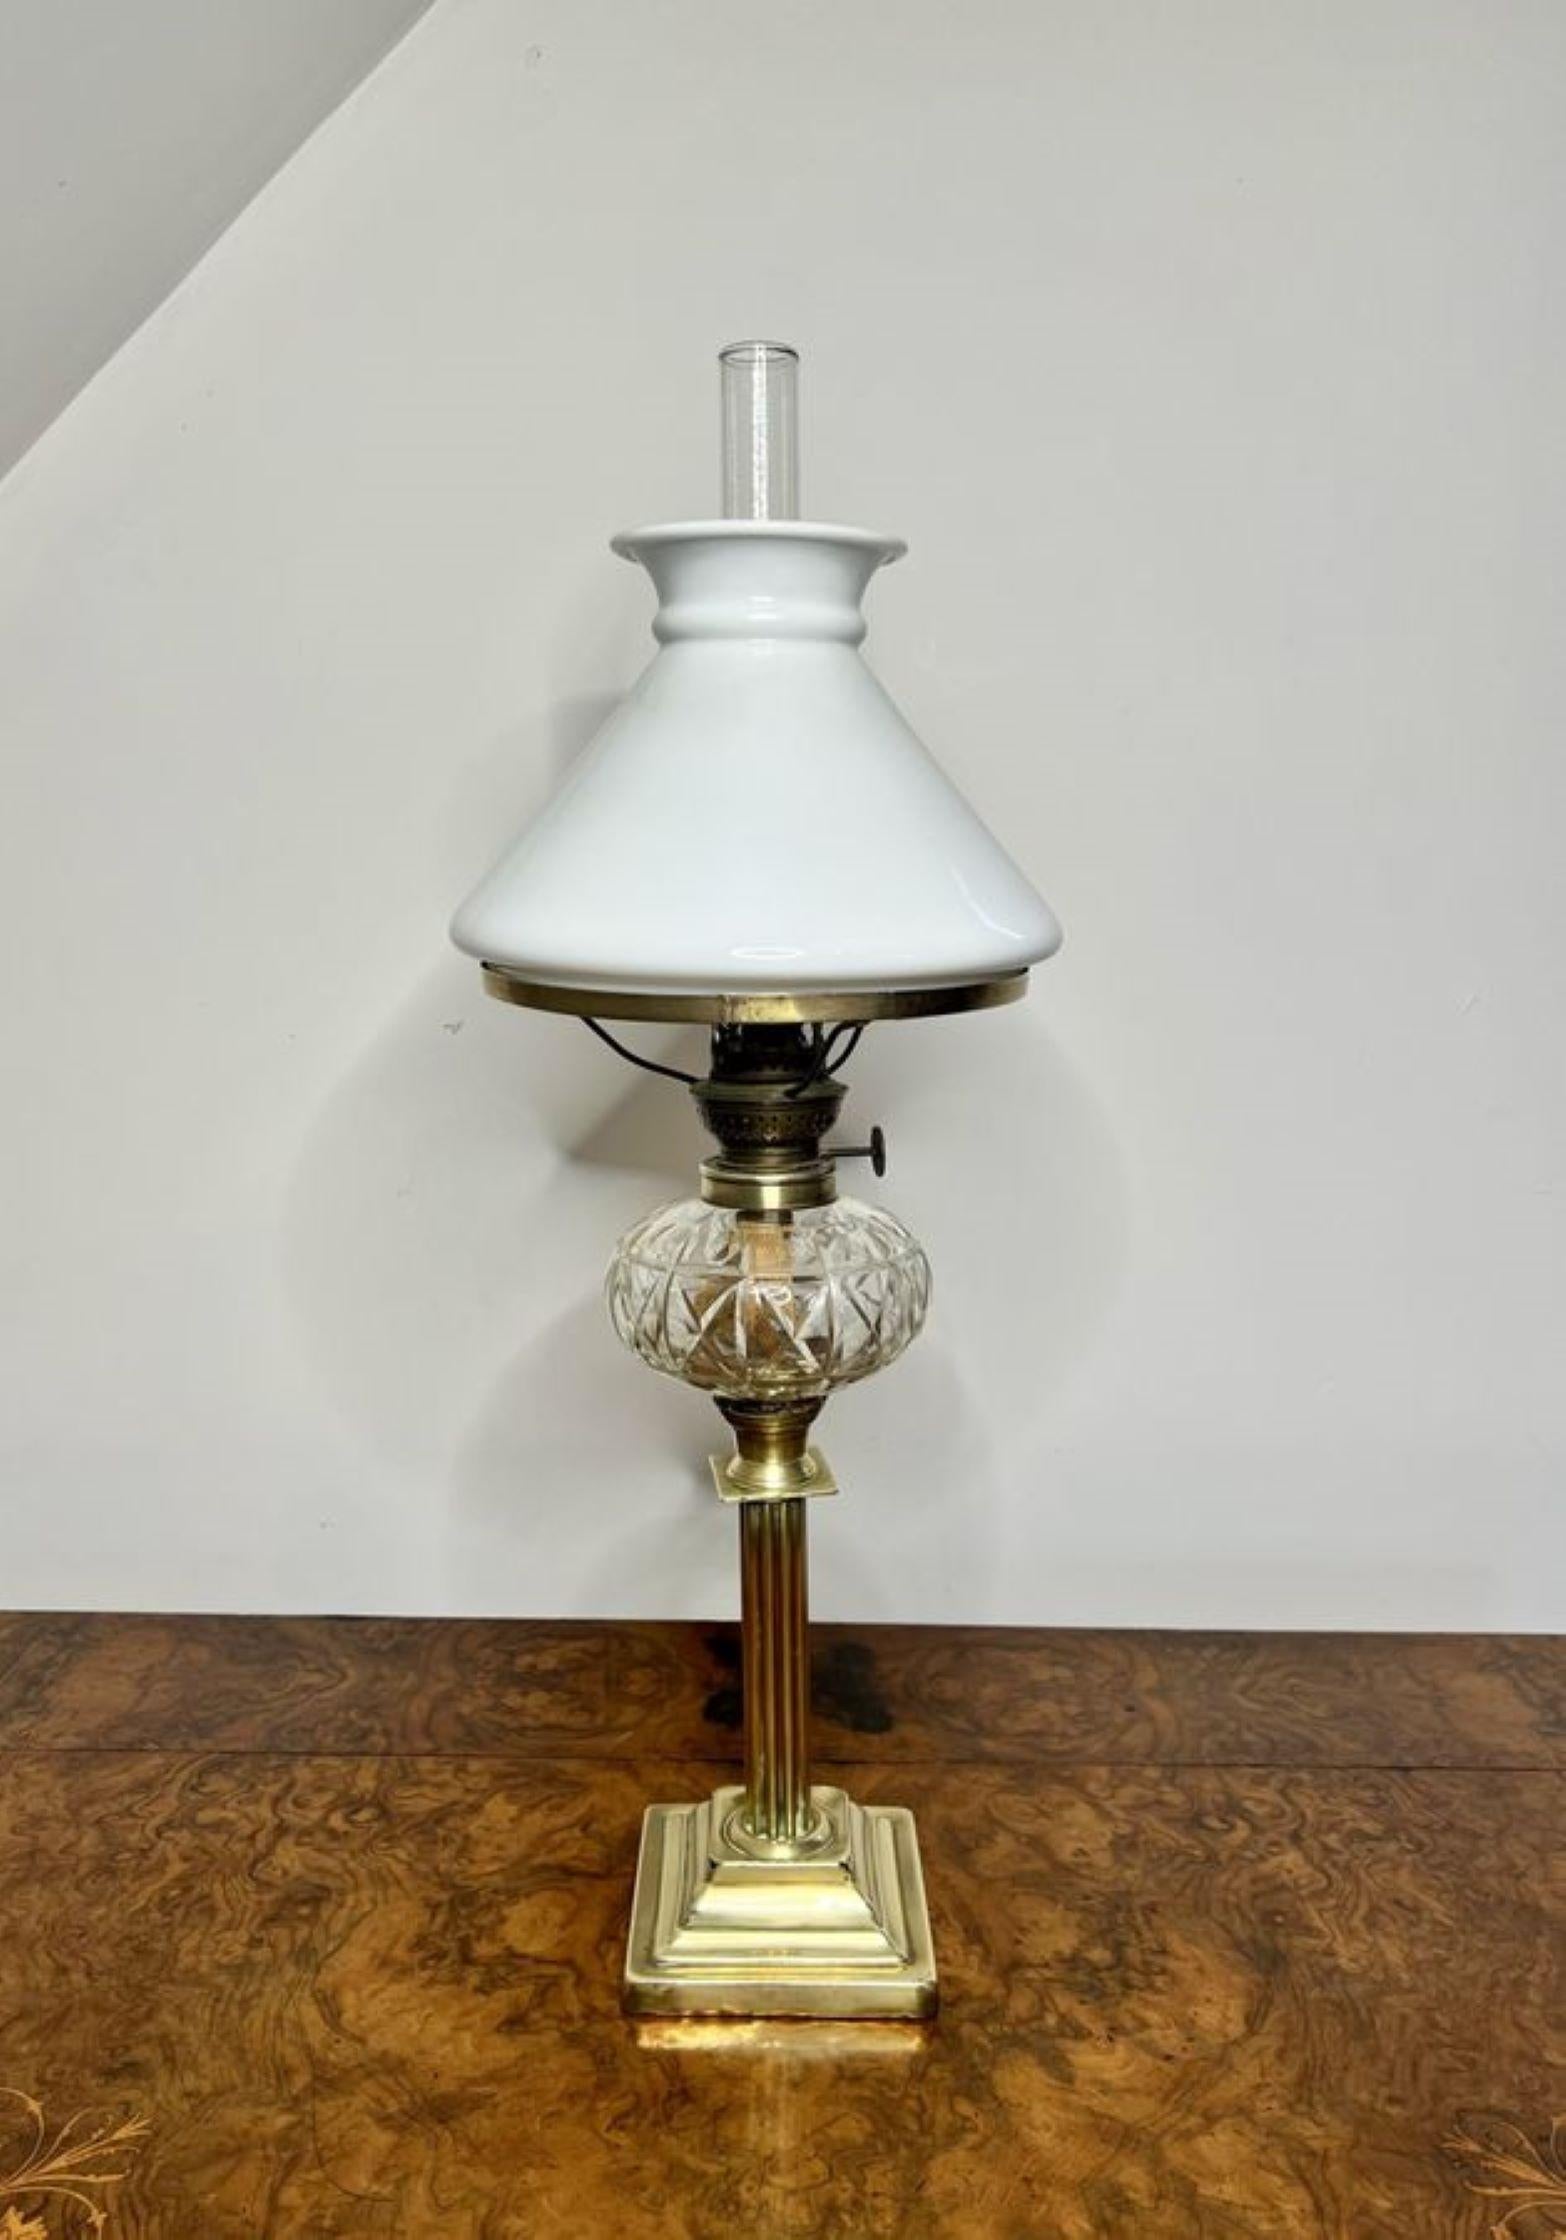 Ancienne lampe à huile victorienne en laiton et verre taillé, avec abat-jour et cheminée en verre blanc d'origine, un brûleur unique en laiton avec une fonte en verre taillé de qualité, soutenue par une colonne à cannelures en laiton reposant sur